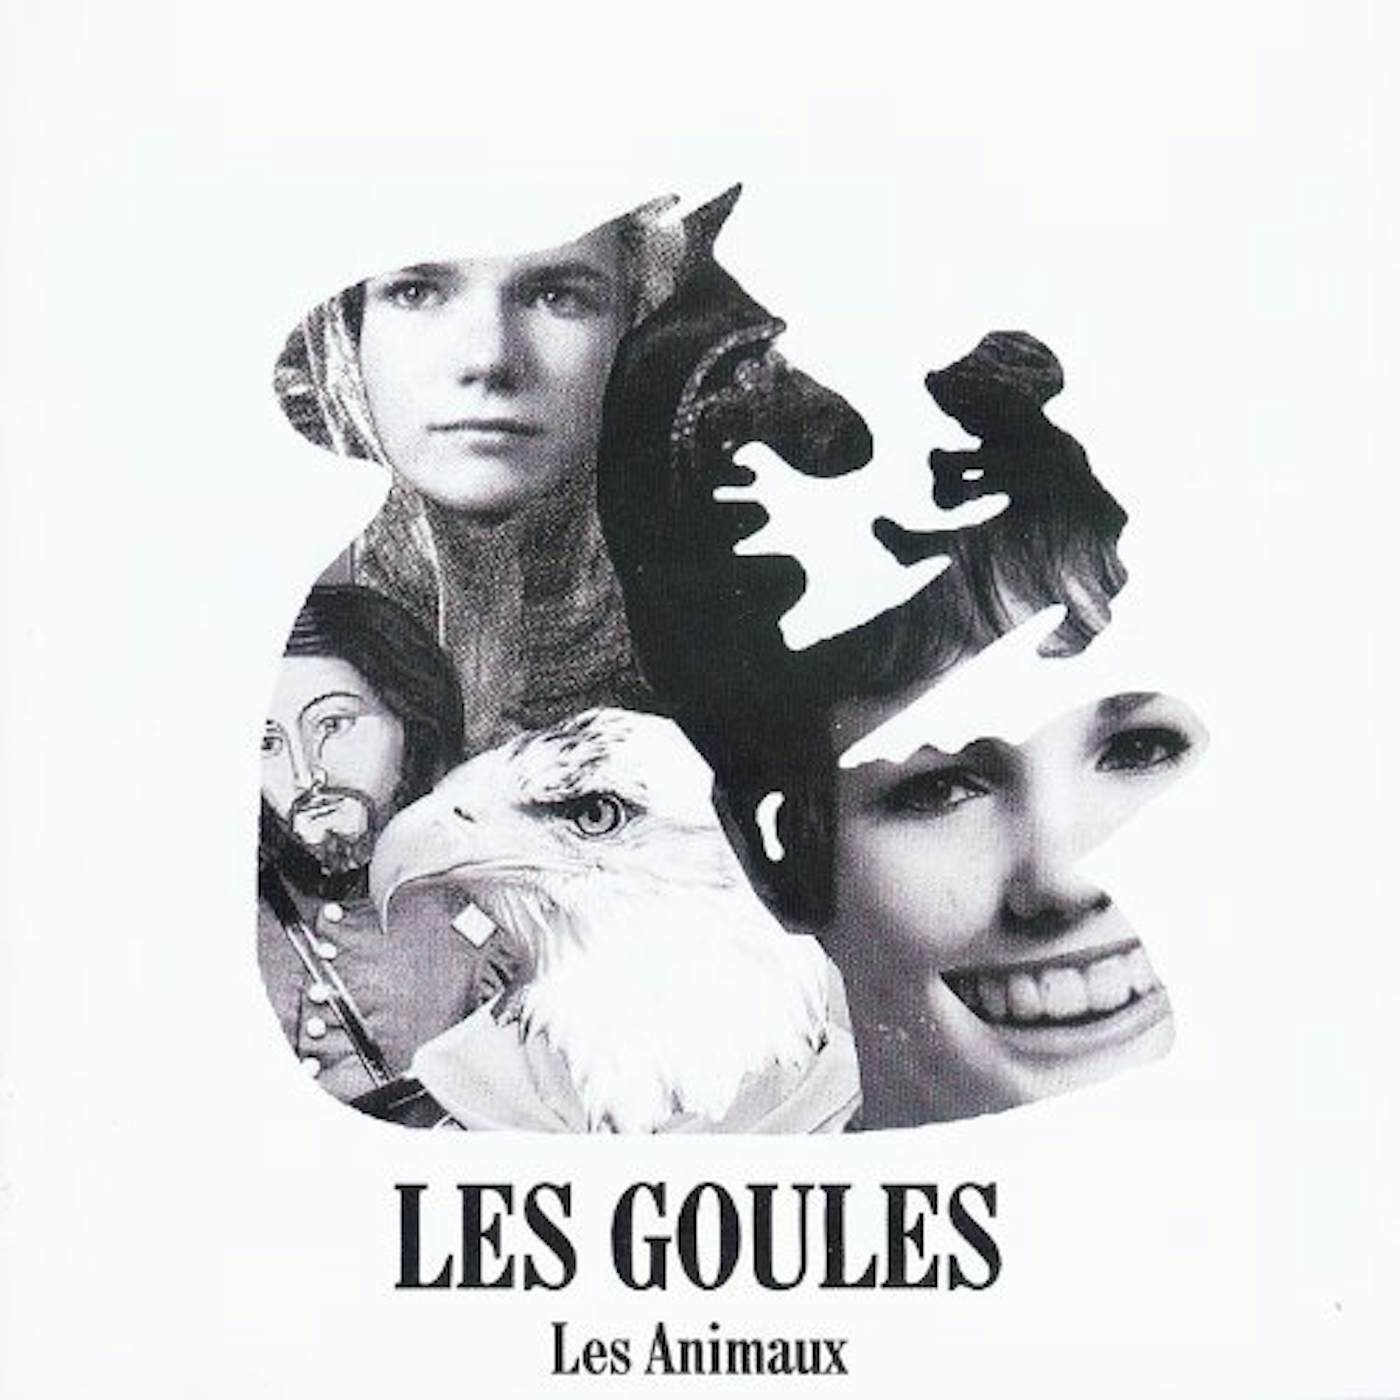 Les Goules Les Animaux Vinyl Record